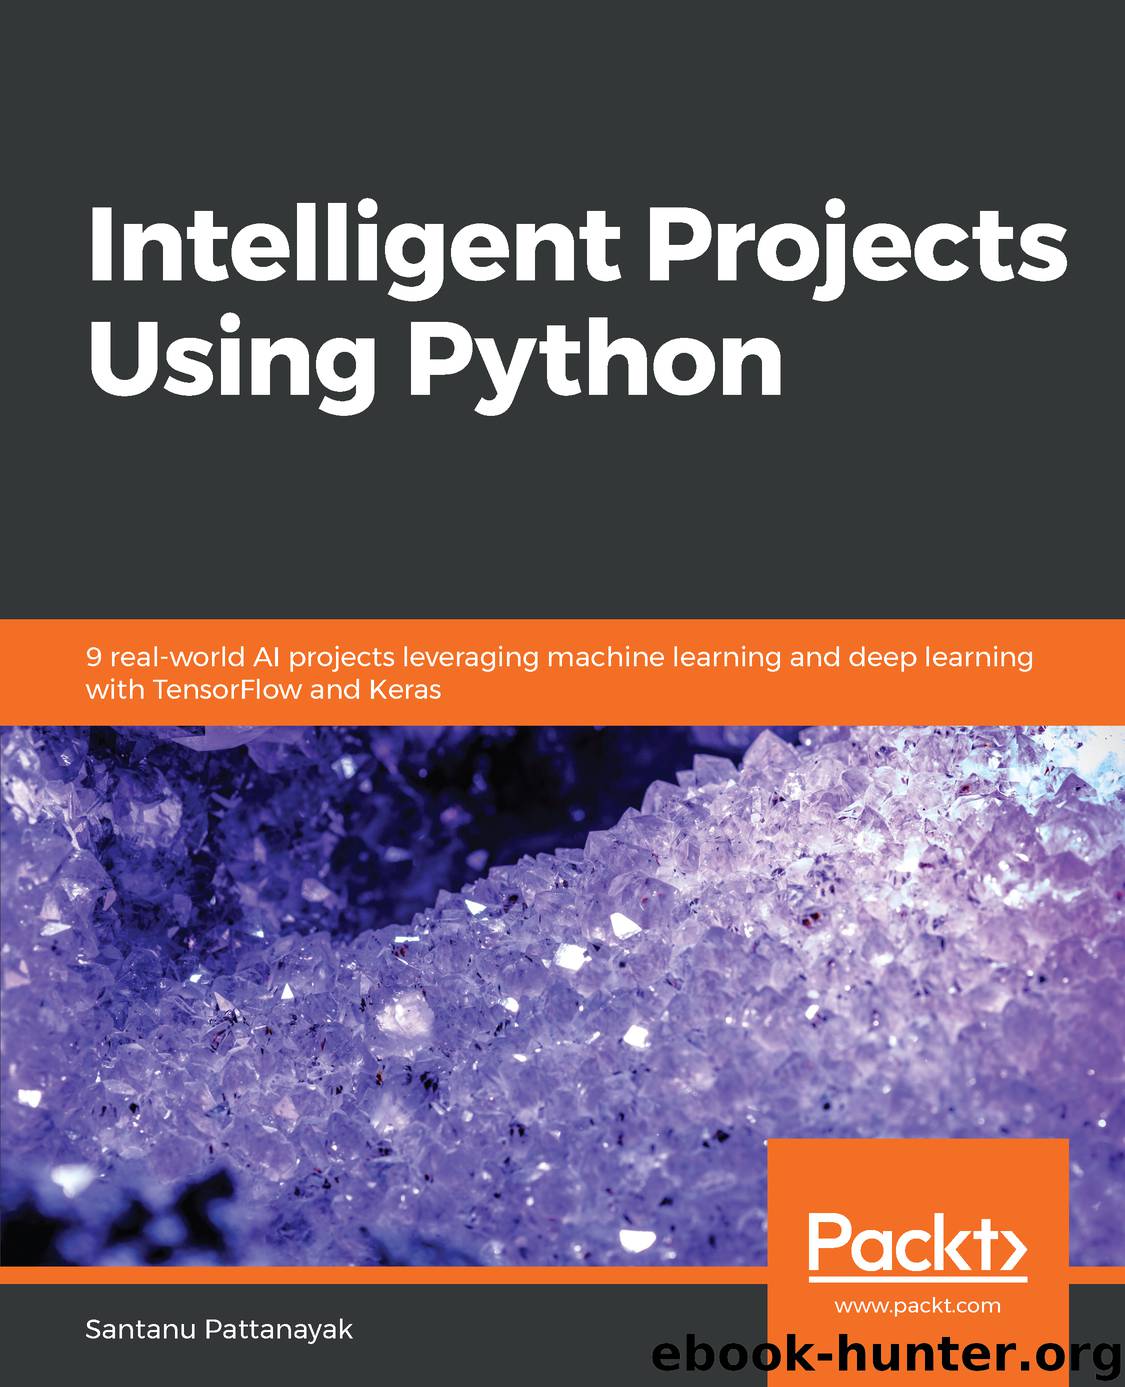 Intelligent Projects Using Python by Santanu Pattanayak